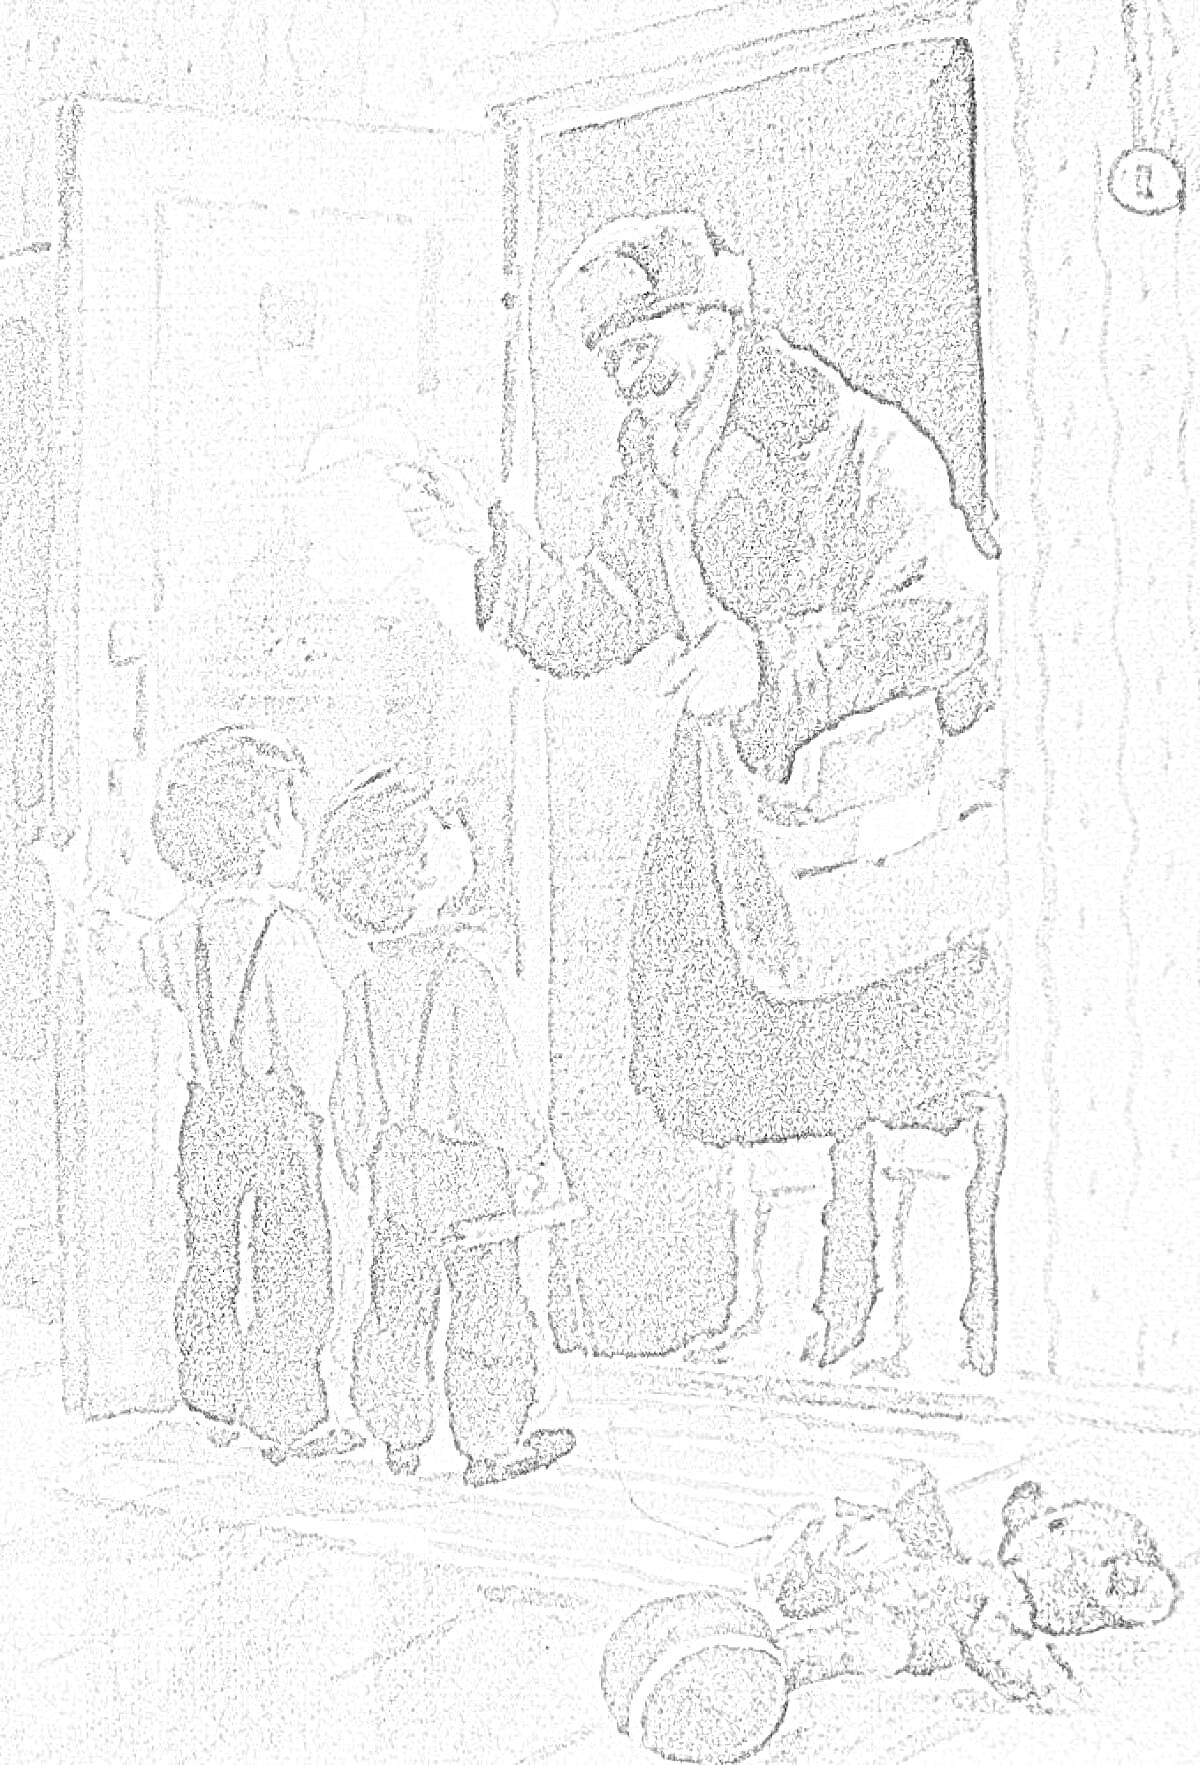 Раскраска Мужчина в валенках здоровается с двумя мальчиками в комнатной двери, на полу лежат игрушка-медведь и ведерко